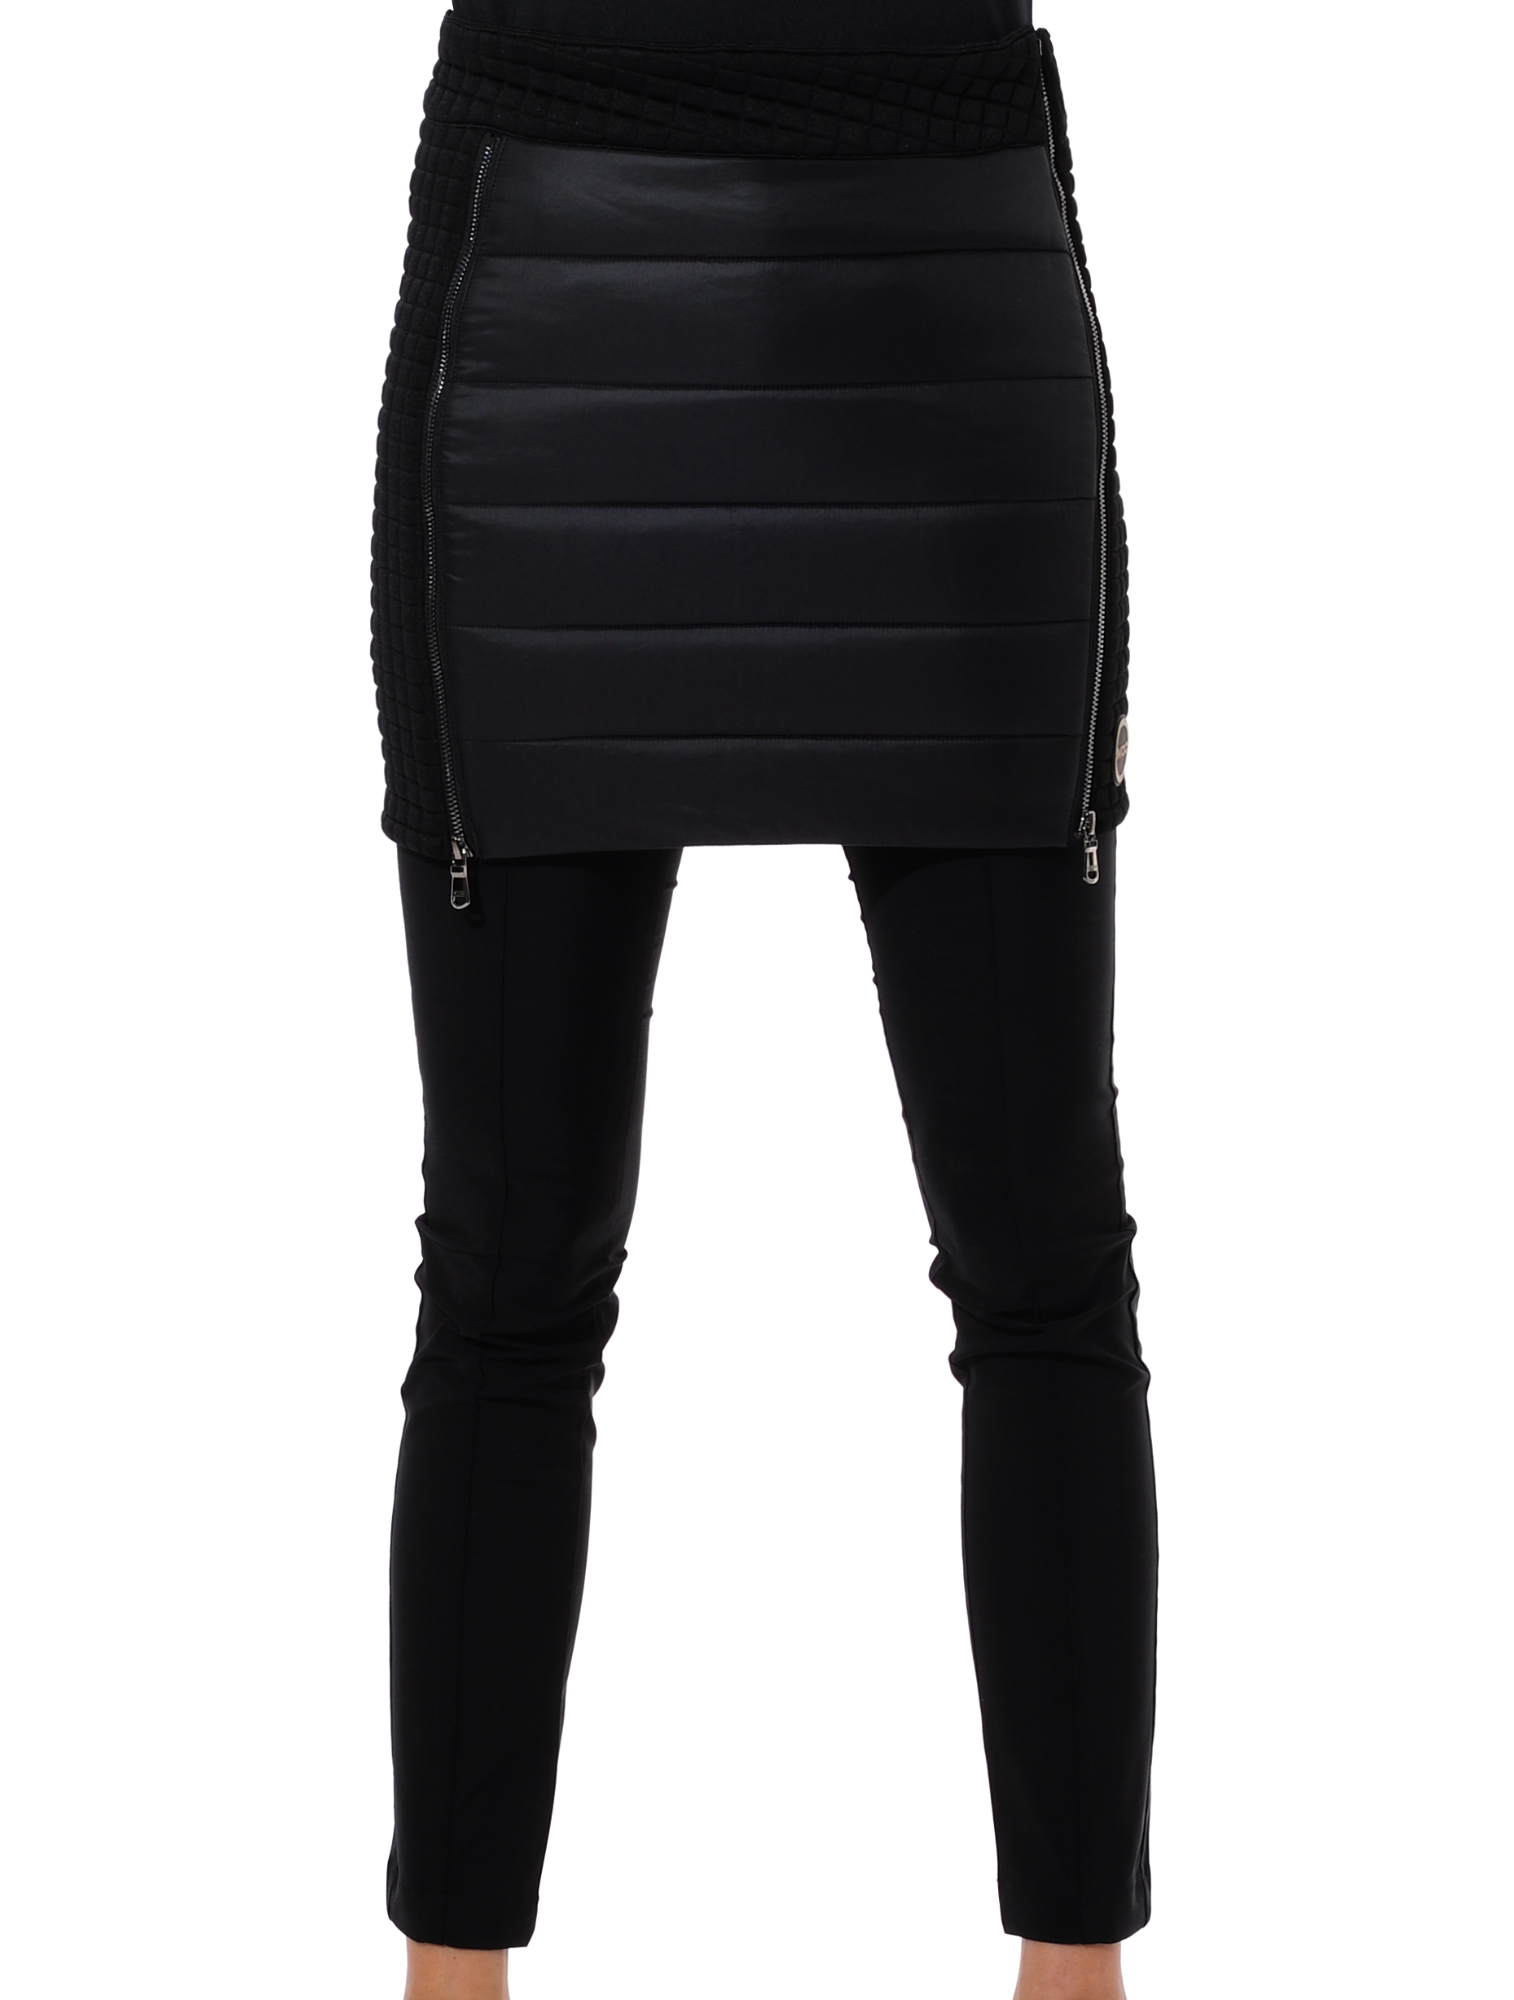 shiny power stretch skirt black | 38 | 349150/99/38